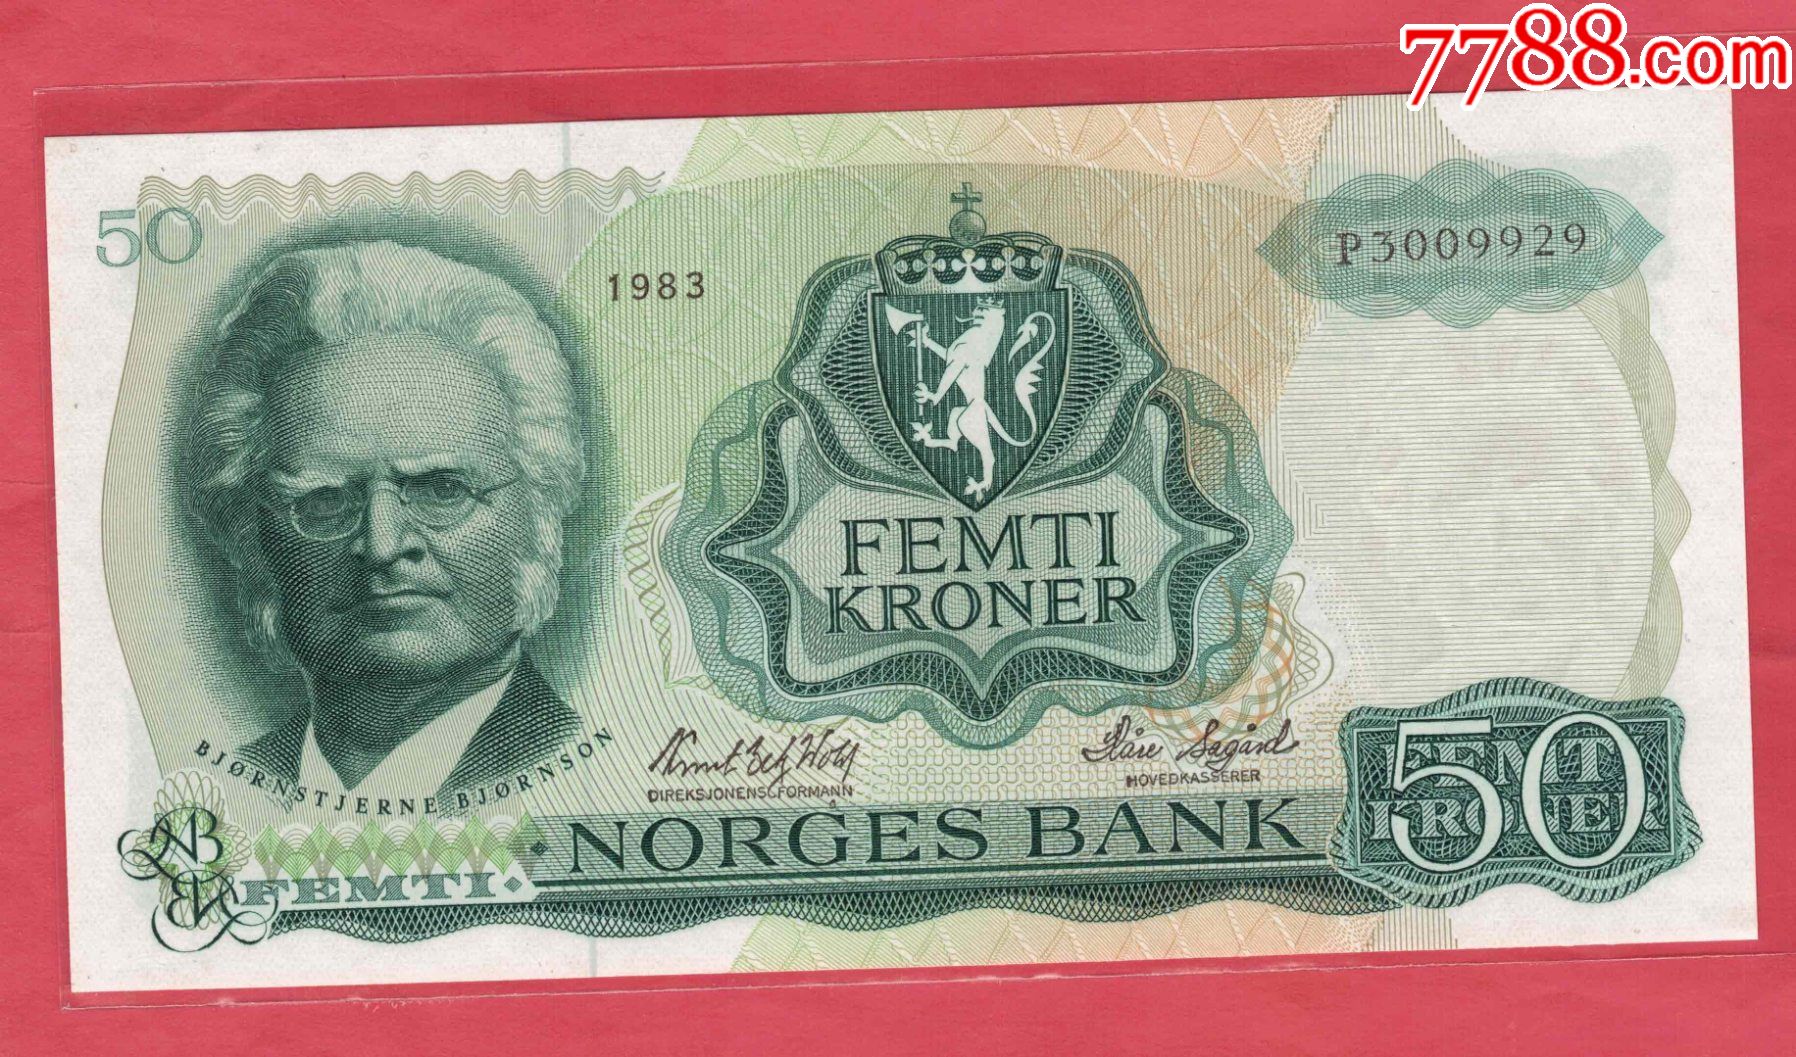 钞票挪威人克朗 库存图片. 图片 包括有 经济, 纸张, 克朗, 克罗钠, 广告牌, 胡言乱语的, 背包 - 50374311